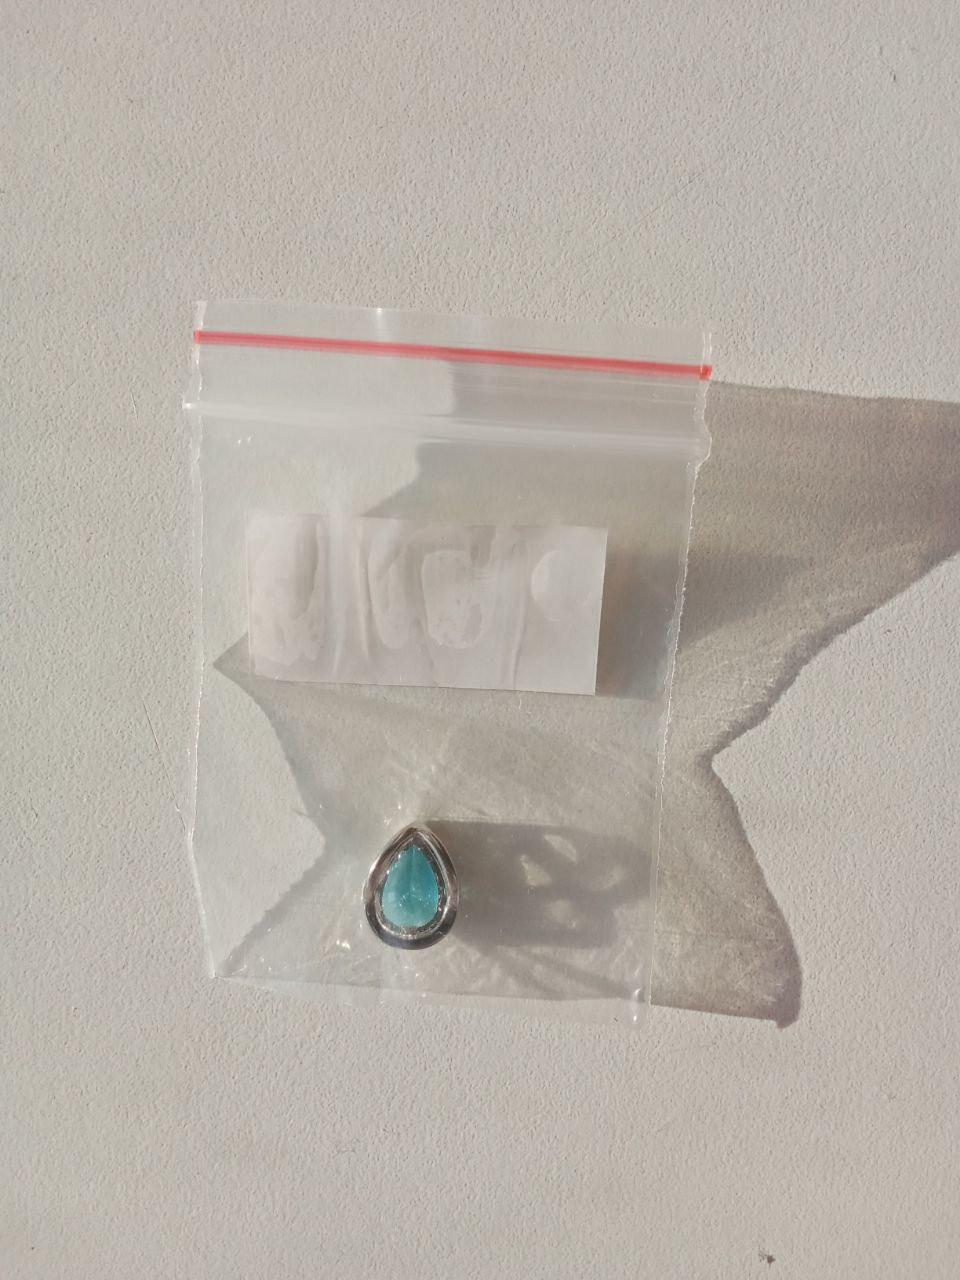 Кулон подвеска капелька голубой камень Sunlight бижктерия украшения серебро позолота бирюза